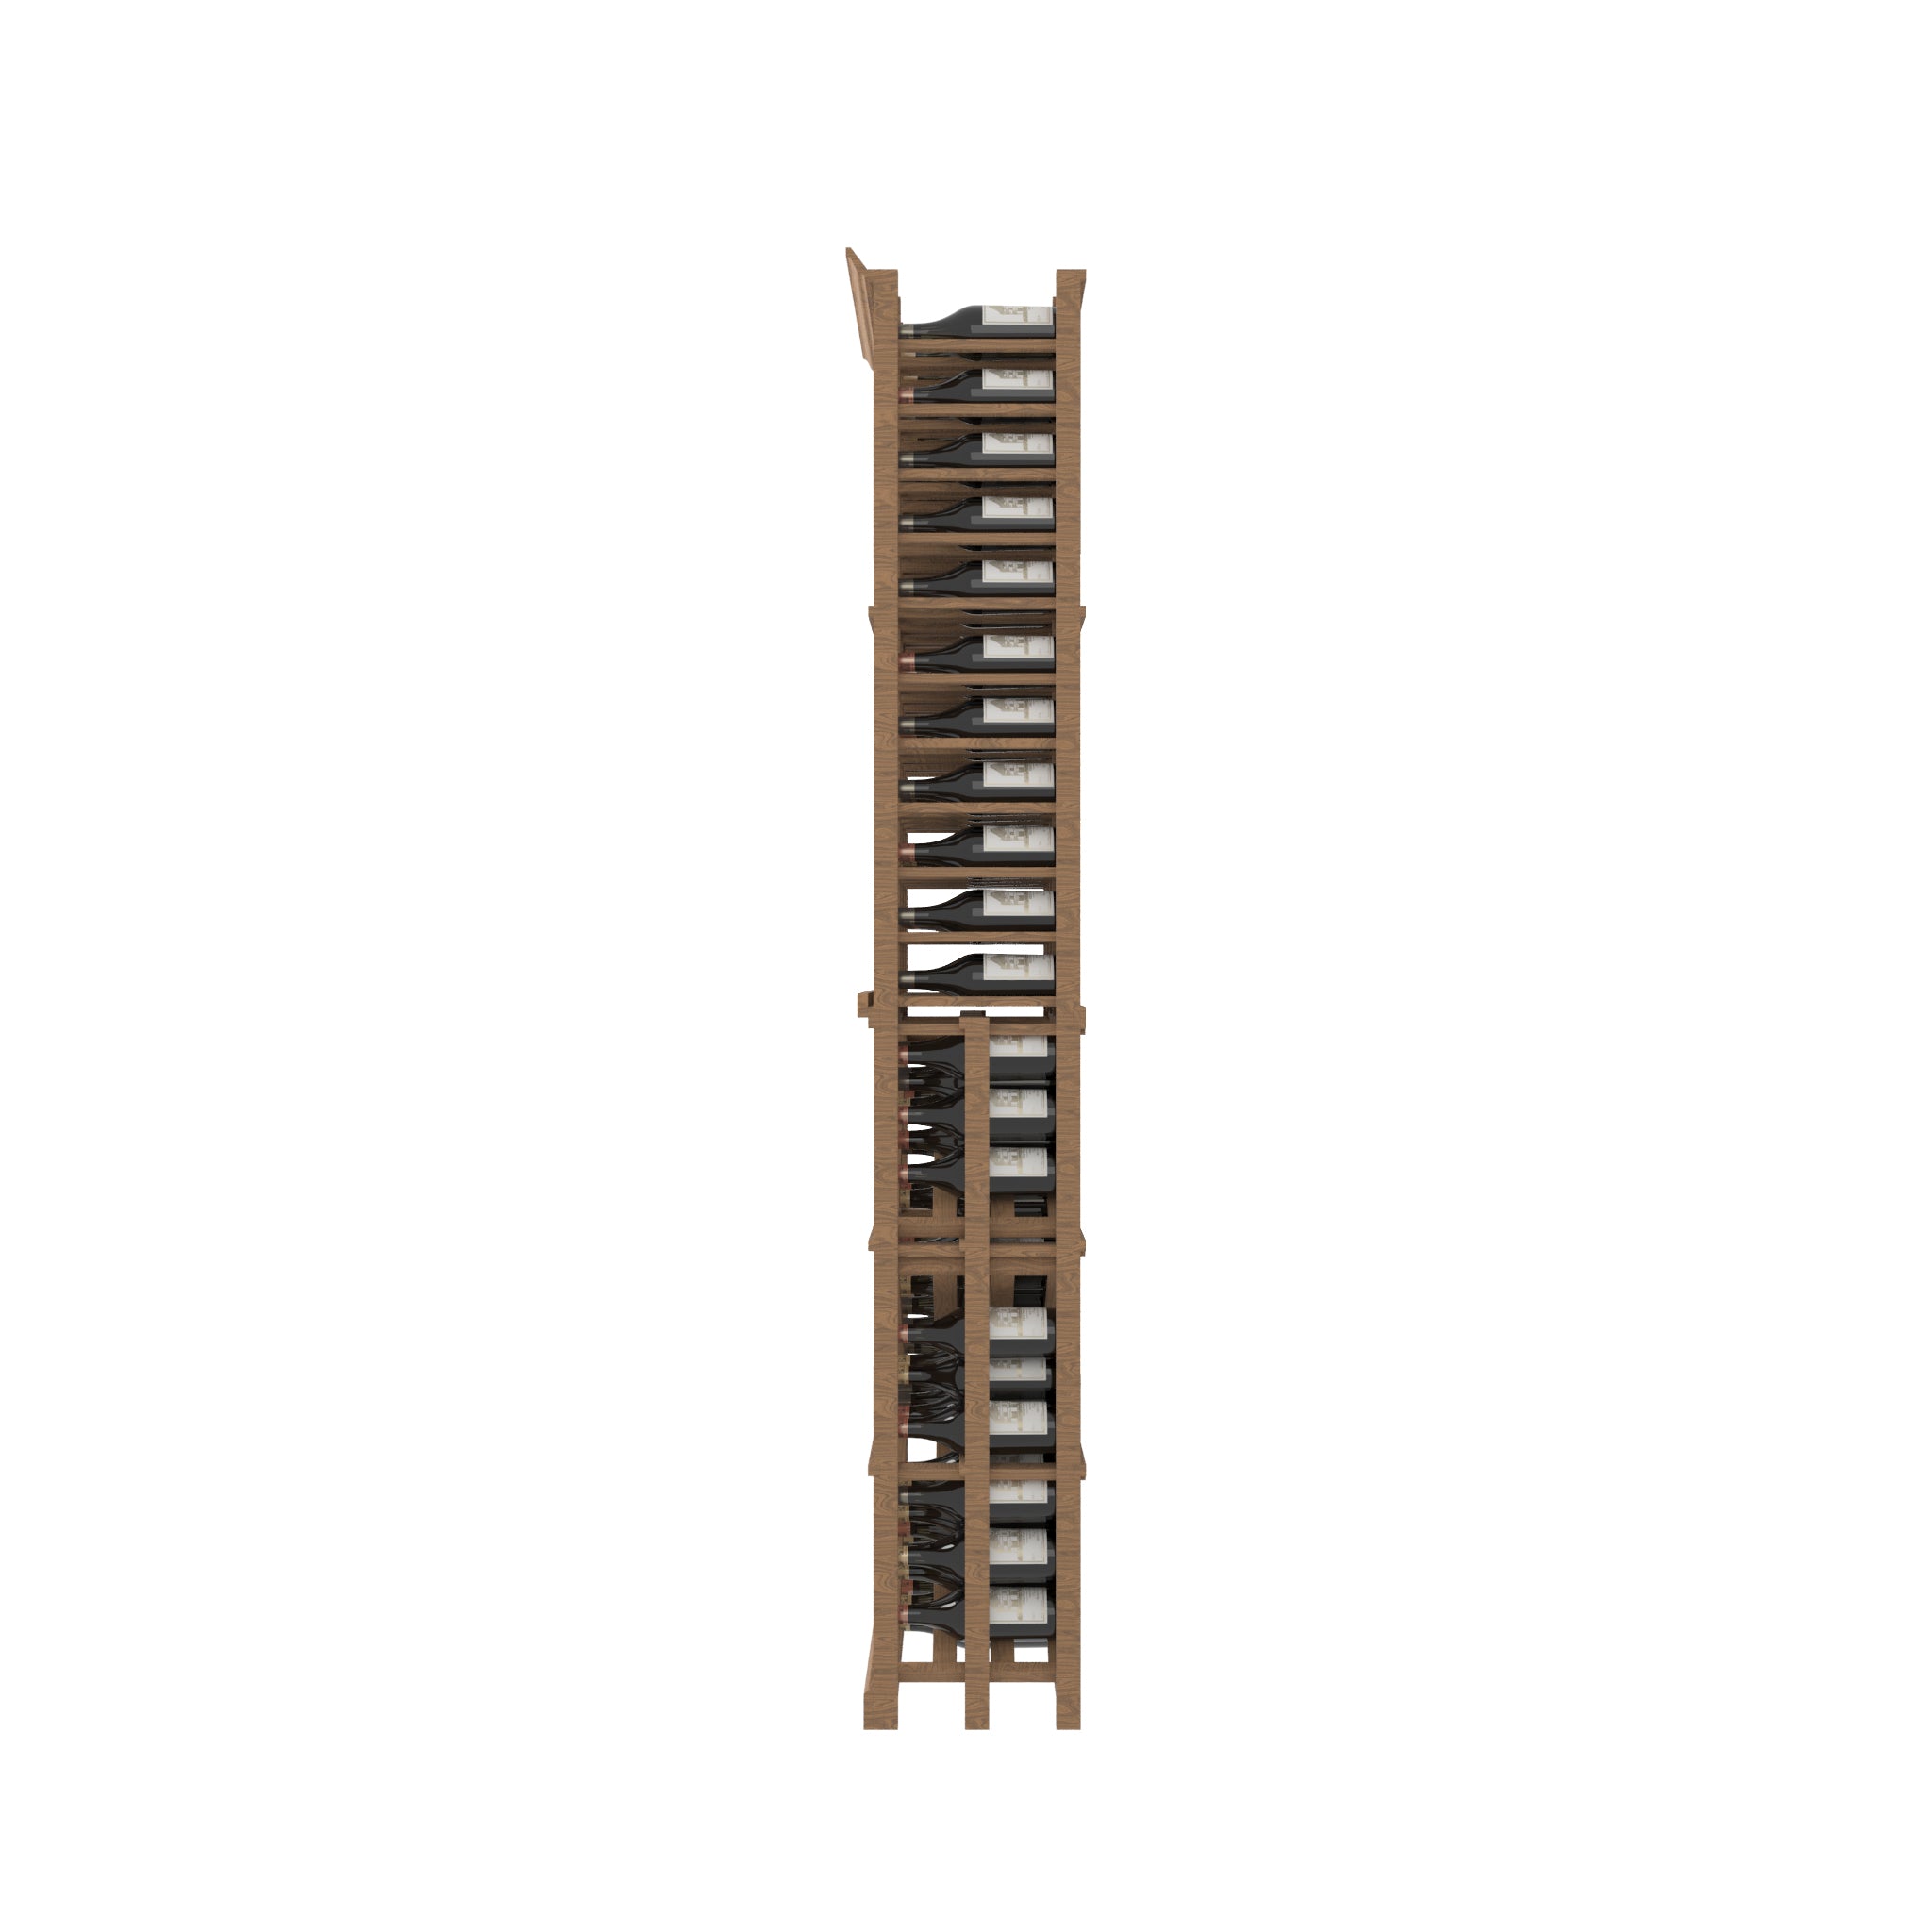 04 Column Rack with BIN Storage - 750ml Bottles